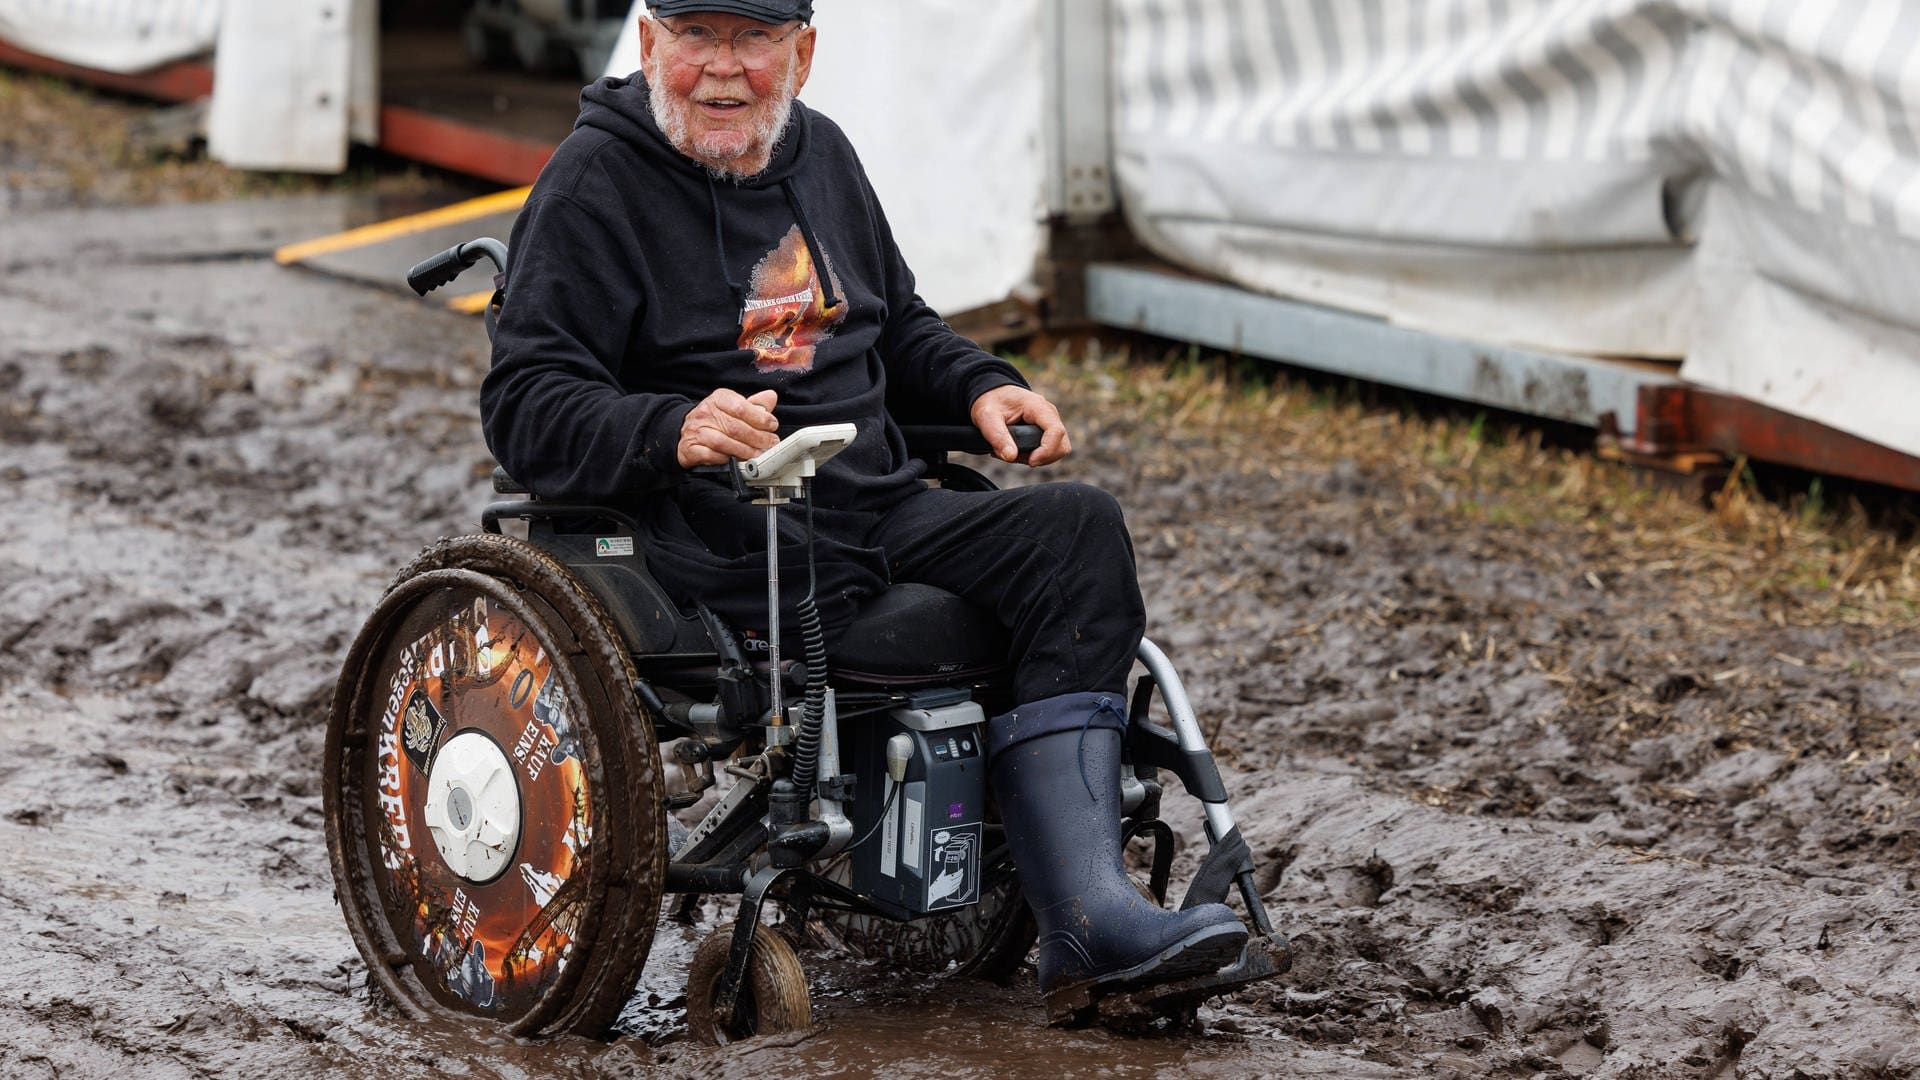 Wacken-Opa Günter, der für seine Charity-Organisation „Lautstark gegen den Krebs“ sammelt, lässt sich trotz Rollstuhl nicht vom Matsch aufhalten.